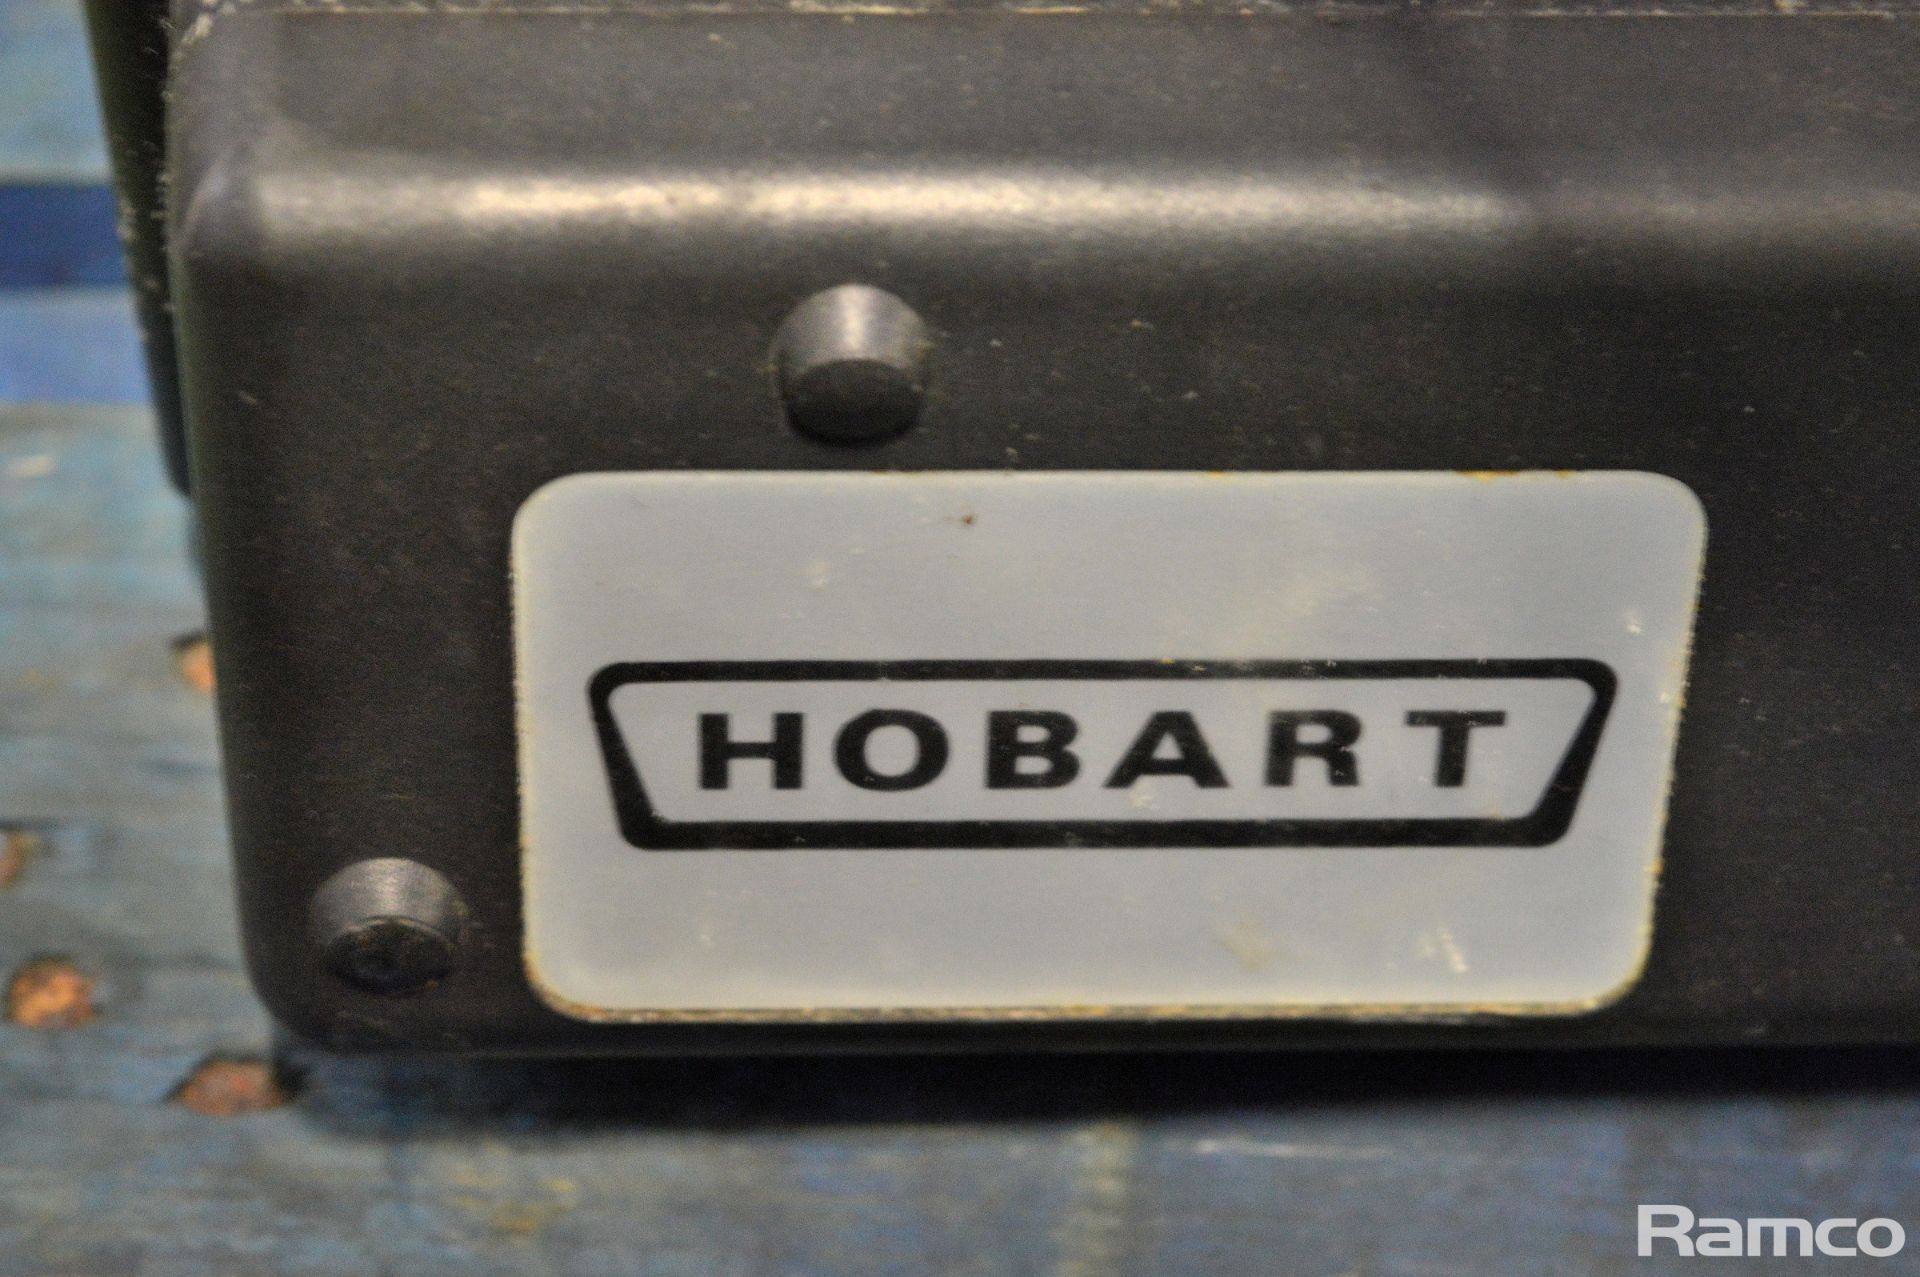 Hobart SG-330 Meat Slicer 230V W 640mm x D 530mm x H 480mm, Musso L1 Ice Cream Maker & more - Image 12 of 13